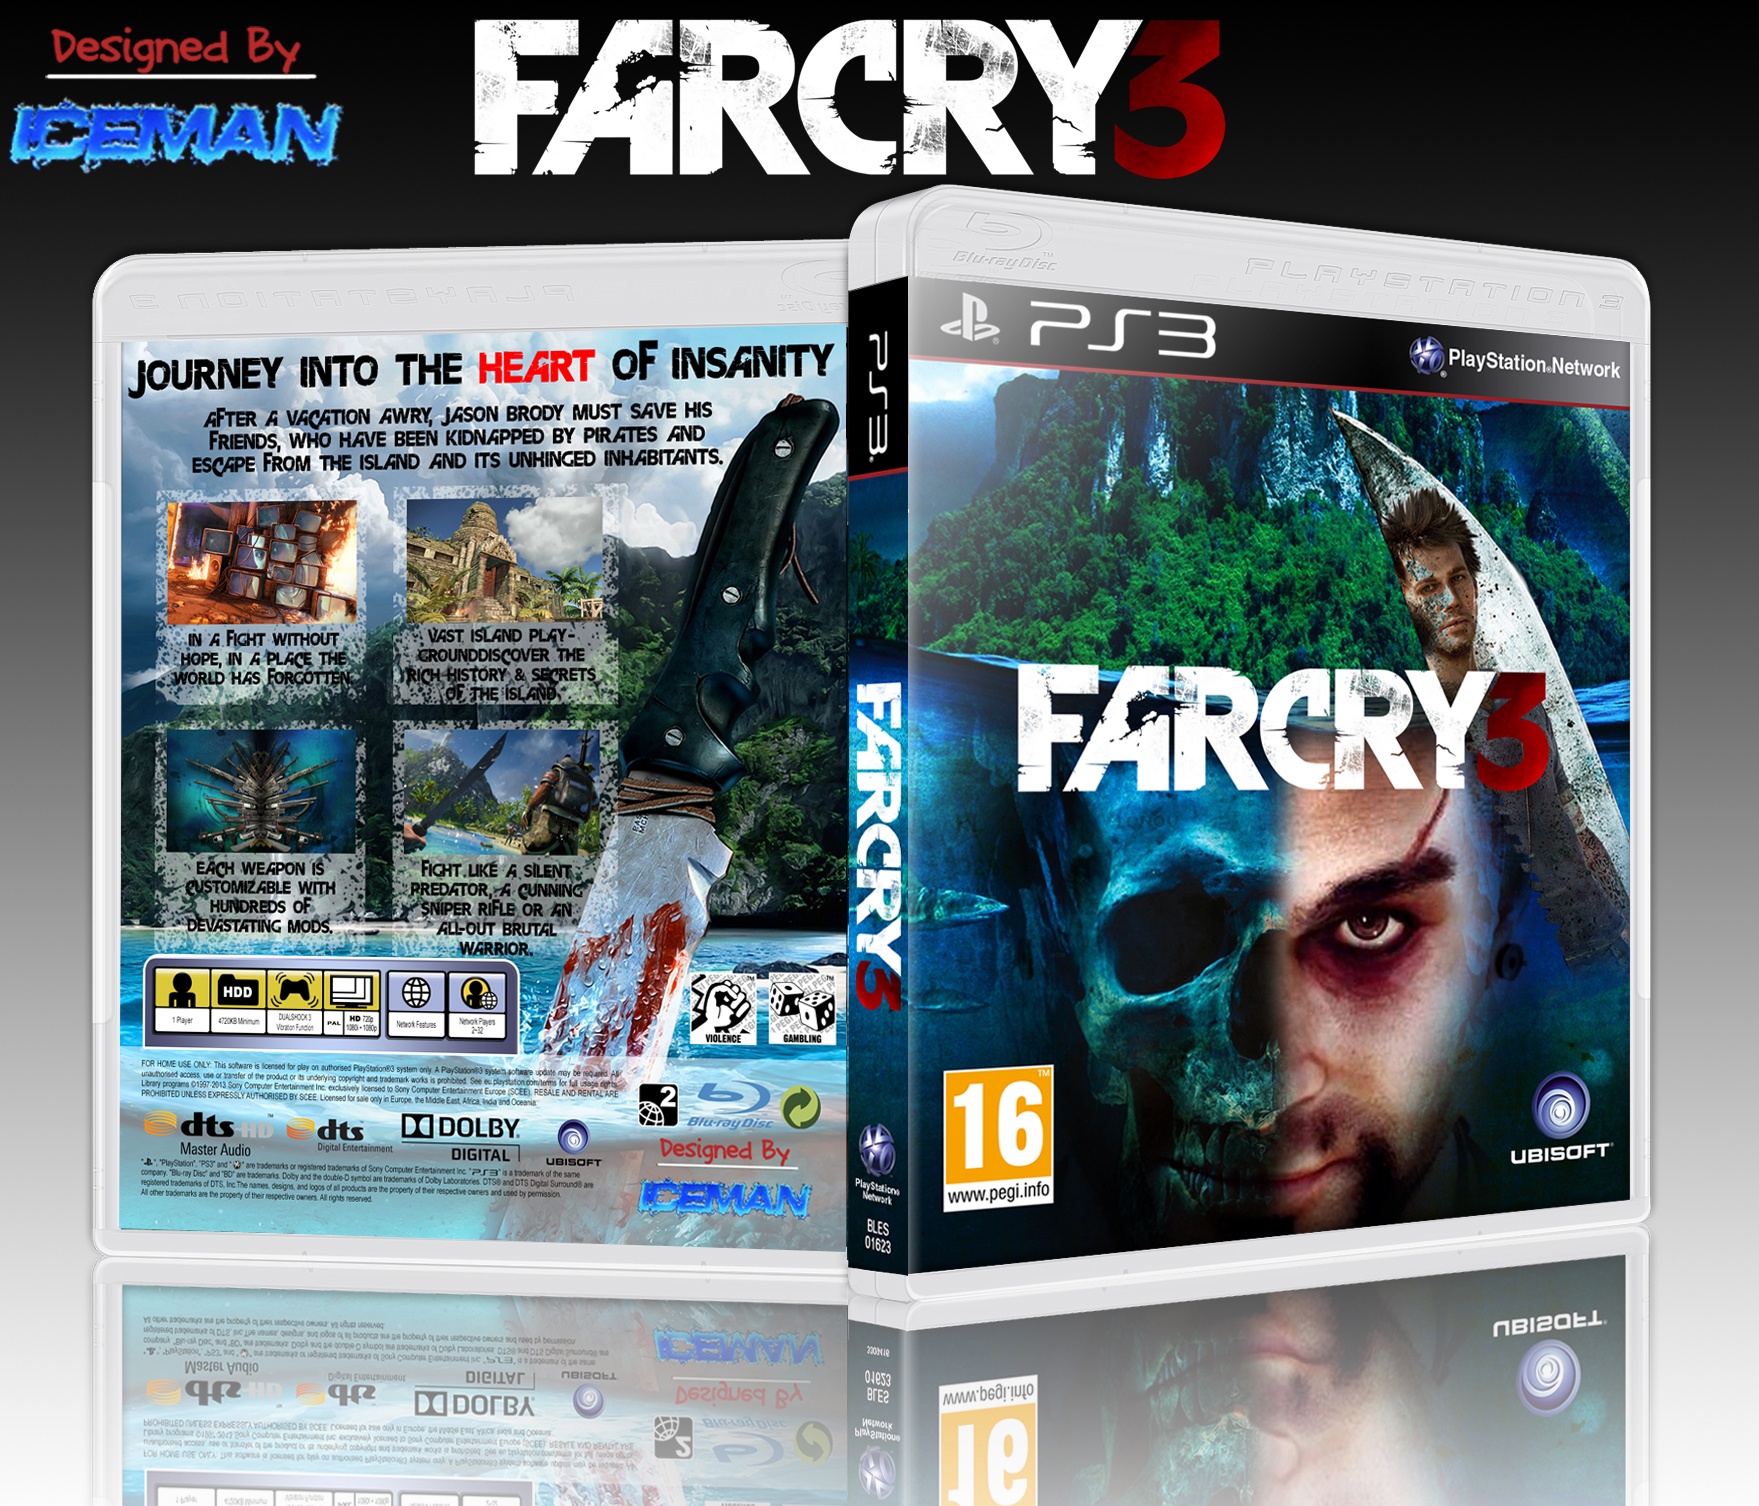 FarCry 3 box cover